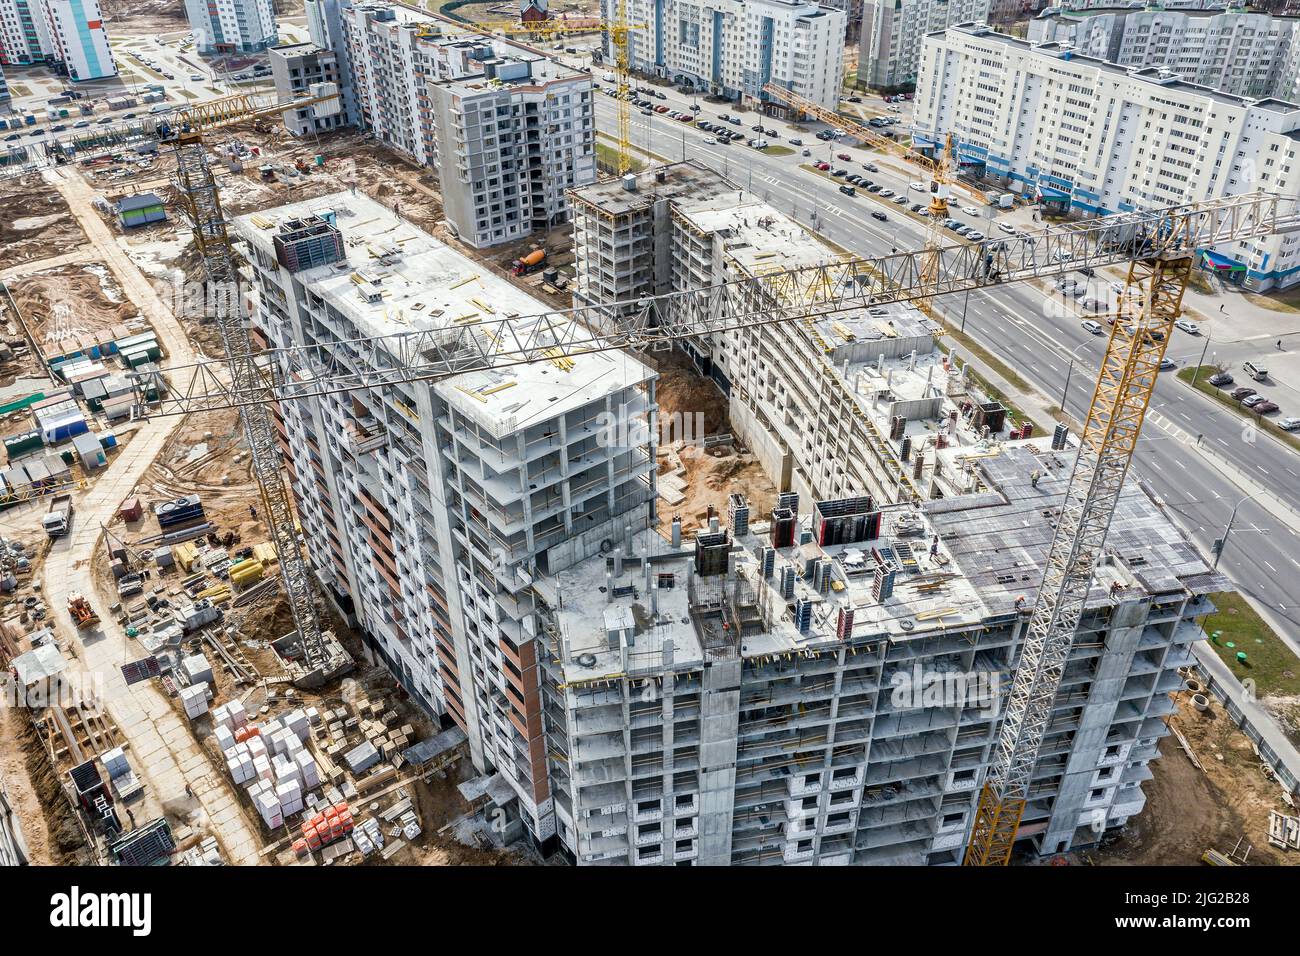 edificios residenciales de gran altura en construcción. gran obra, vista aérea. Foto de stock